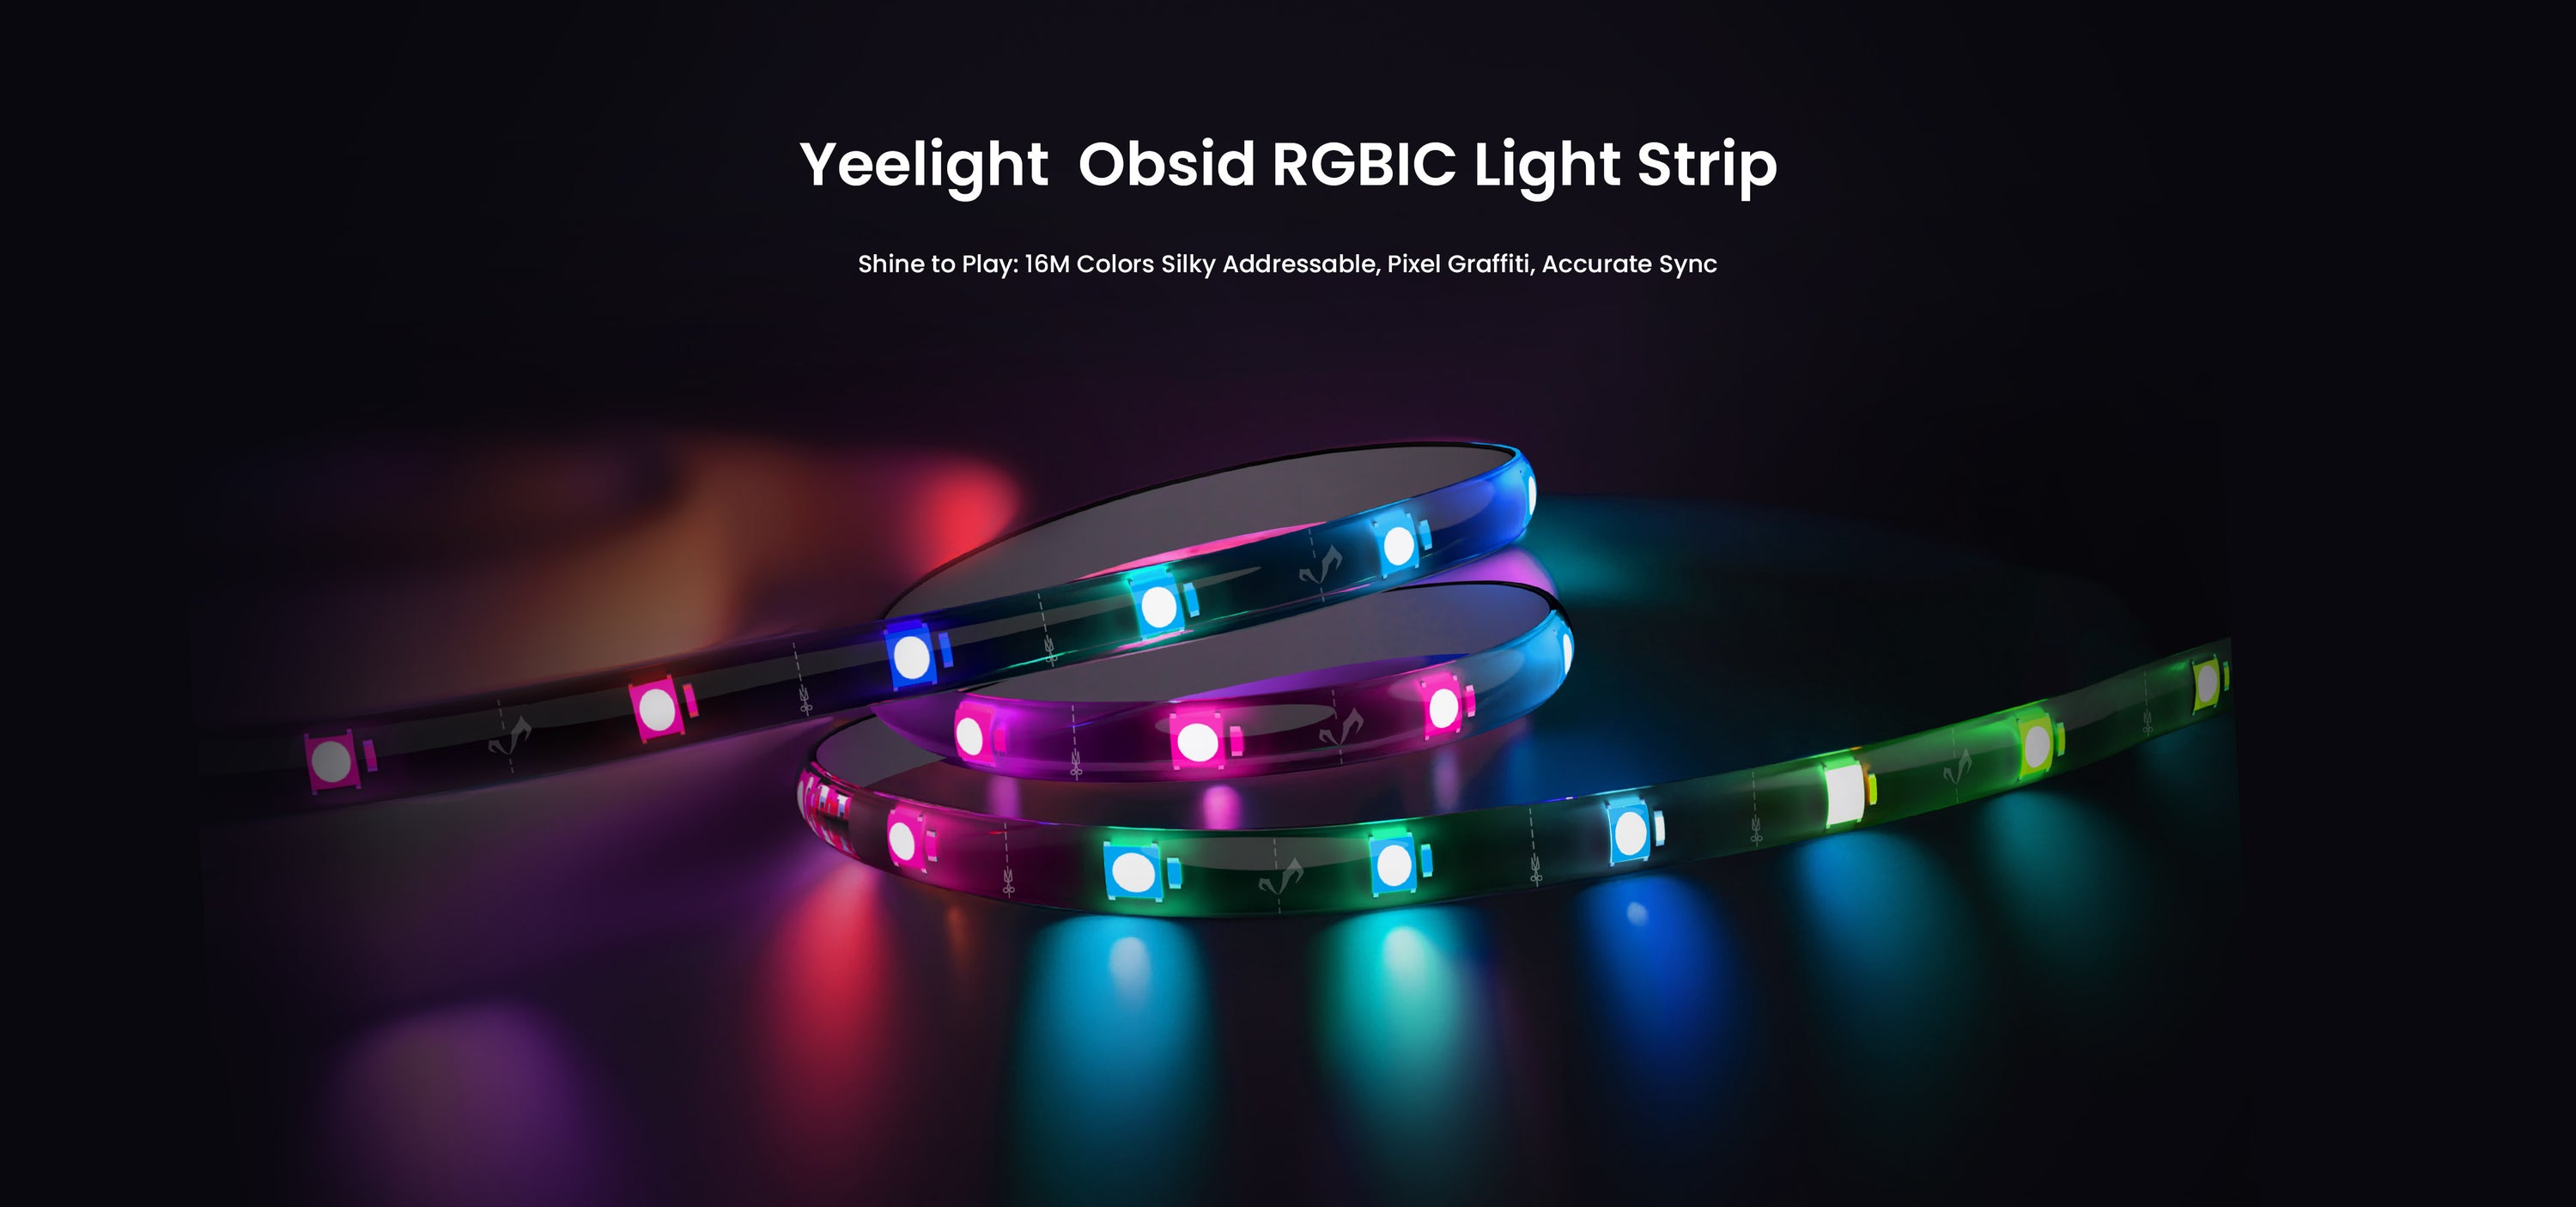 Yeelight анонсувала світлодіодну стрічку Obsid RGBIC Light Strip, яка може синхронізуватися з музикою та іграми